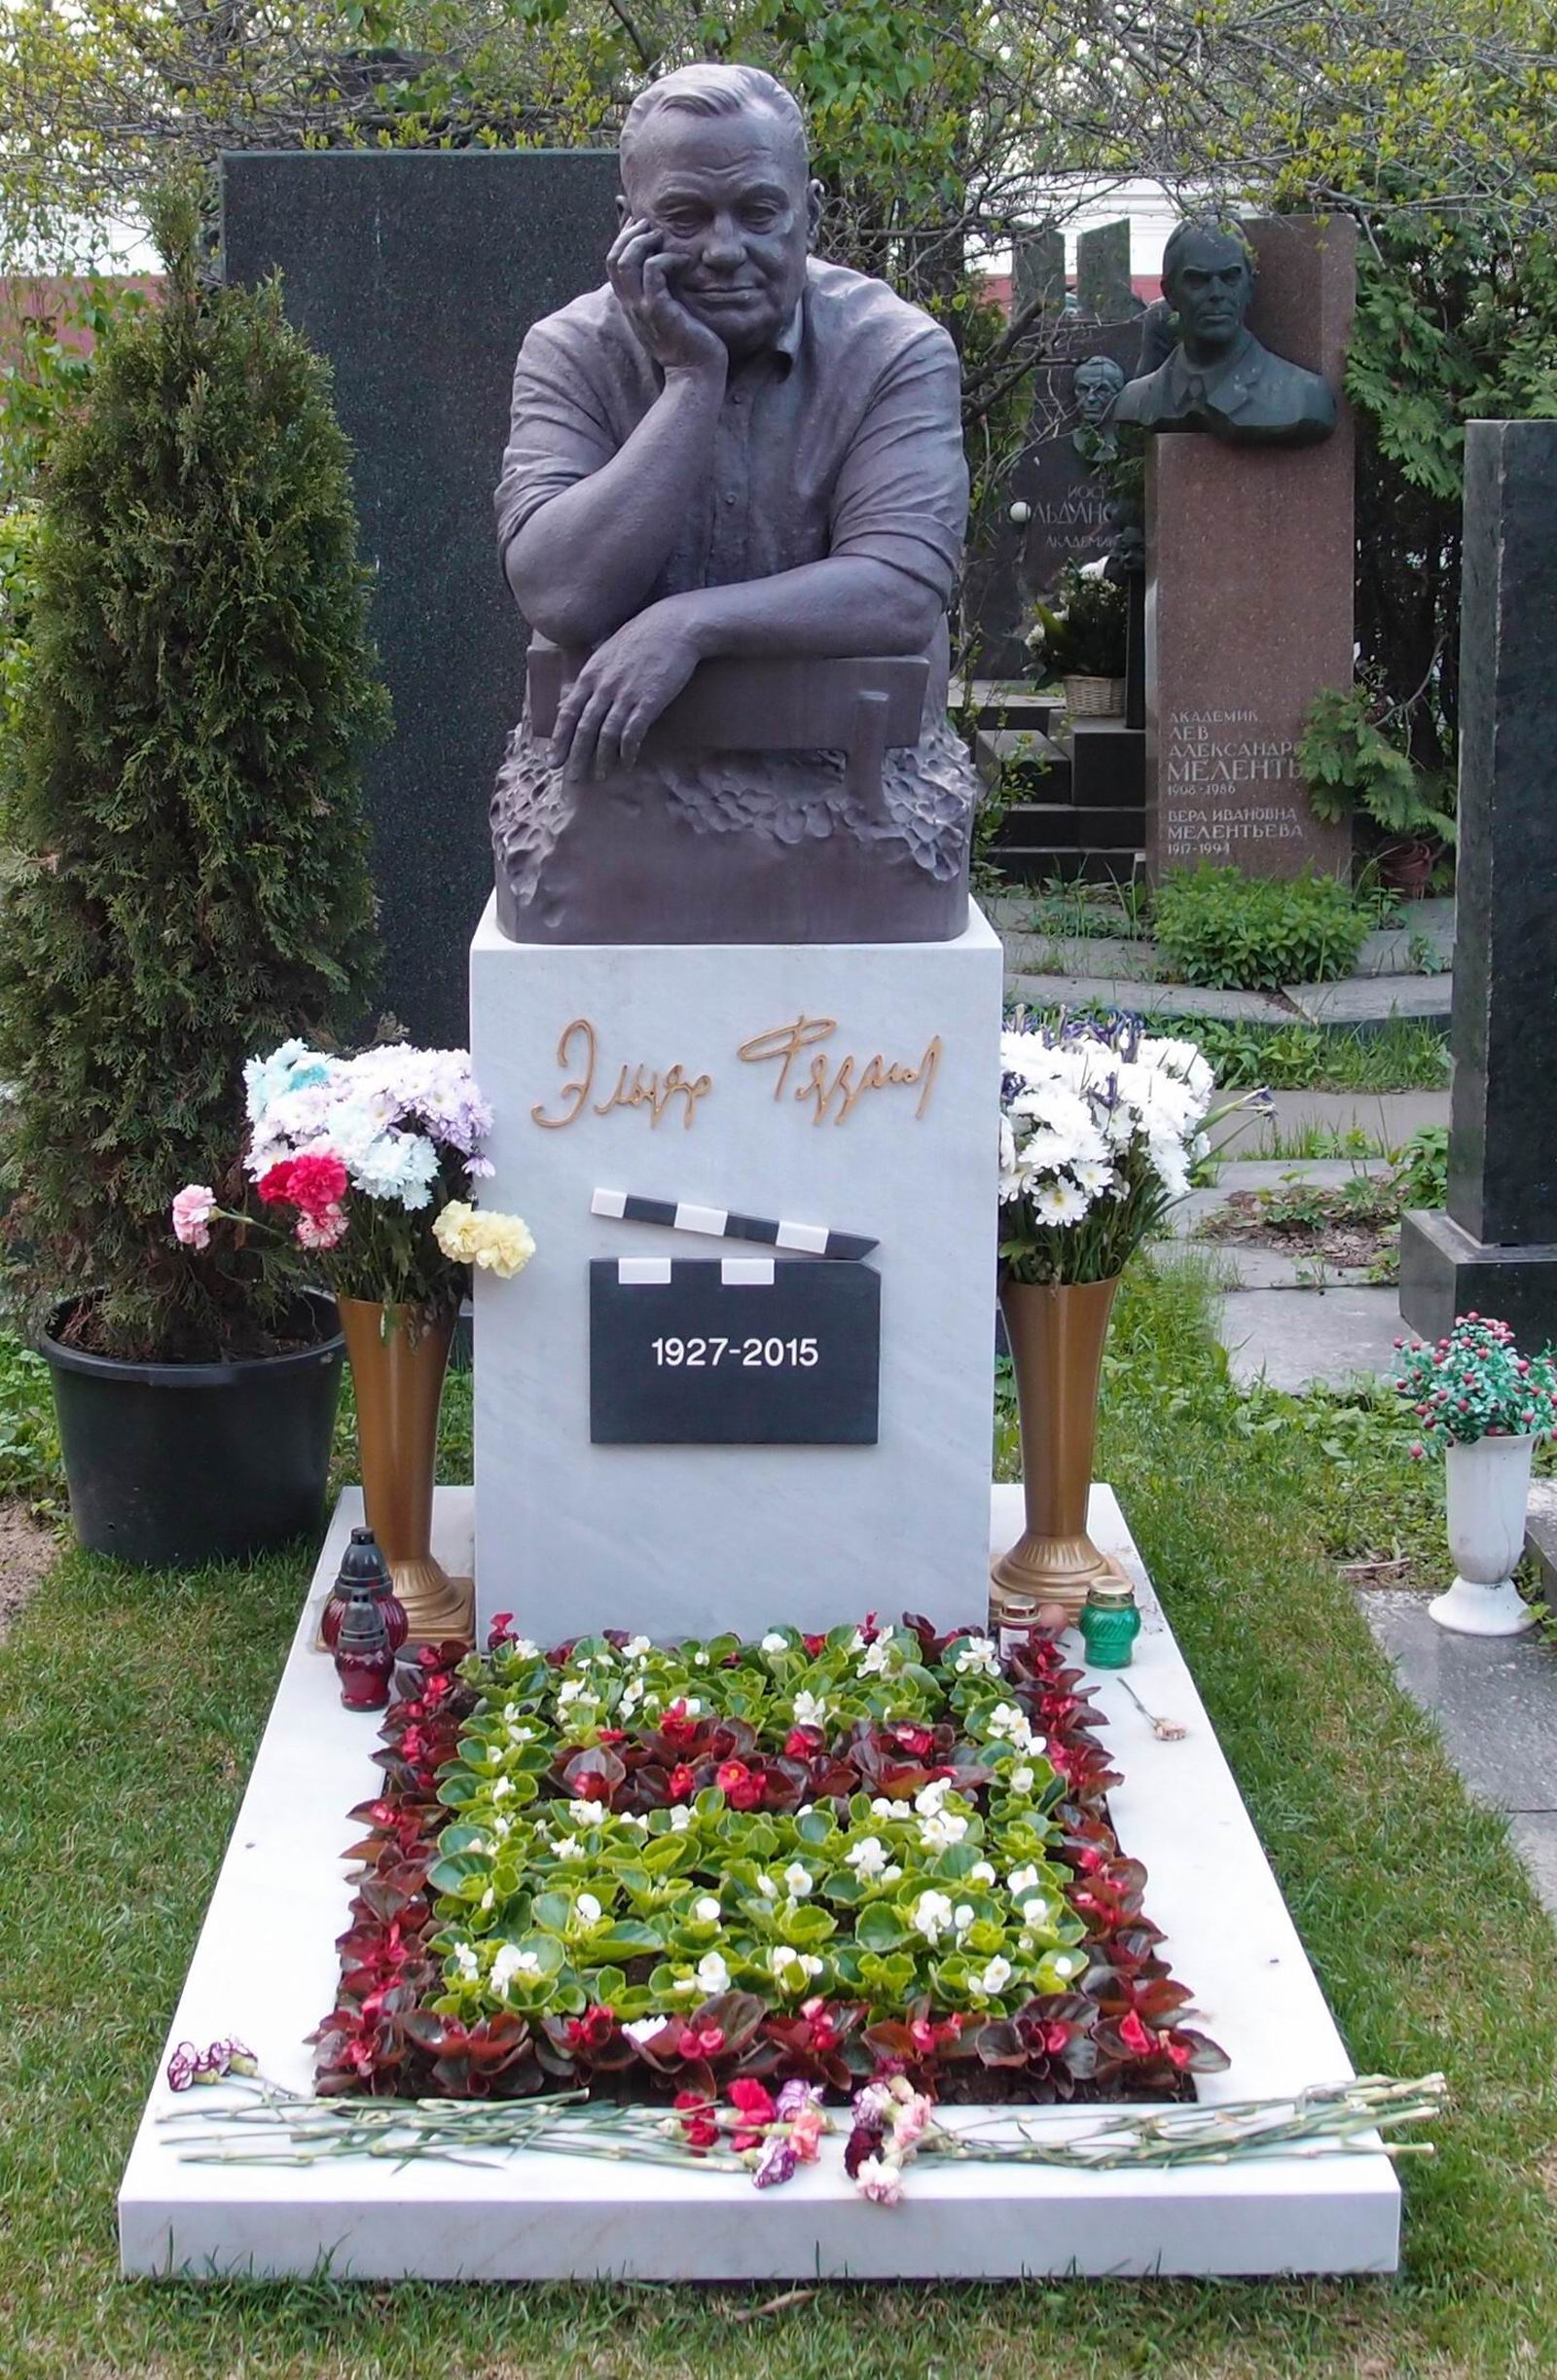 Памятник на могиле Рязанова Э.А. (1927-2015), ск. Важа Микаберидзе (Prasto), на Новодевичьем кладбище (10-1-20). Нажмите левую кнопку мыши чтобы увидеть фрагмент памятника.